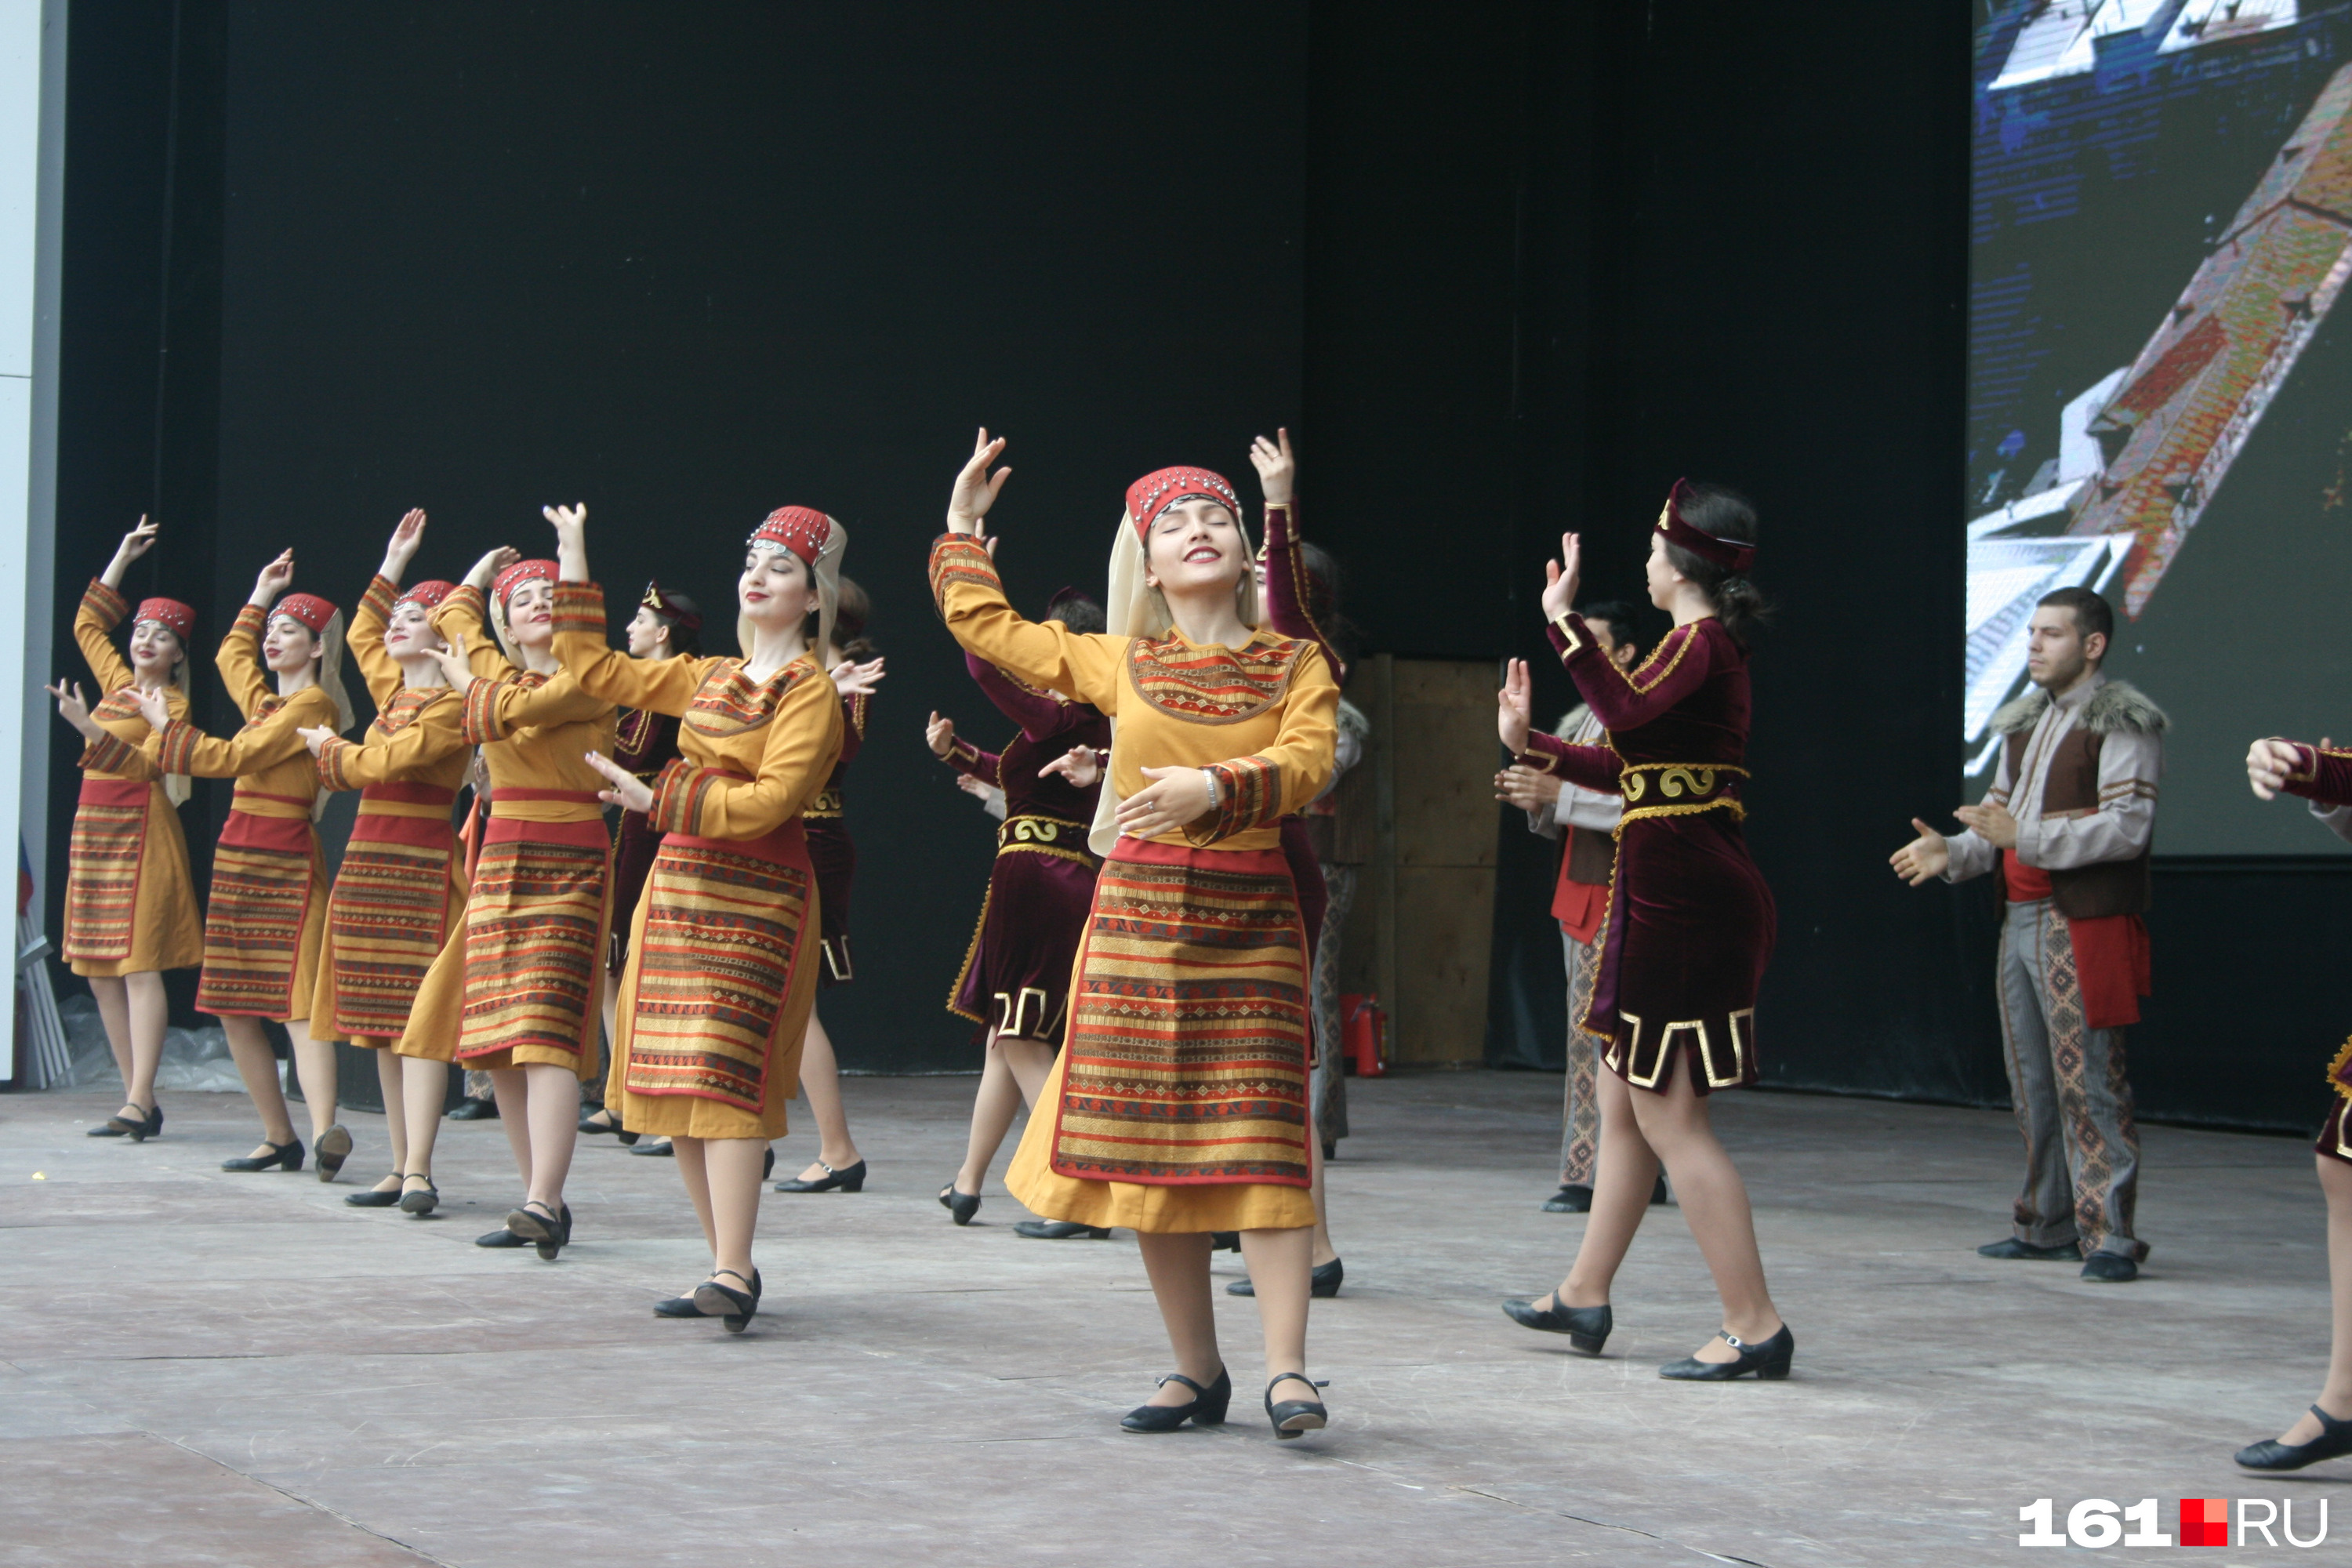 Выступали коллективы с танцами разных народов мира. На фото — исполнительницы армянского танца